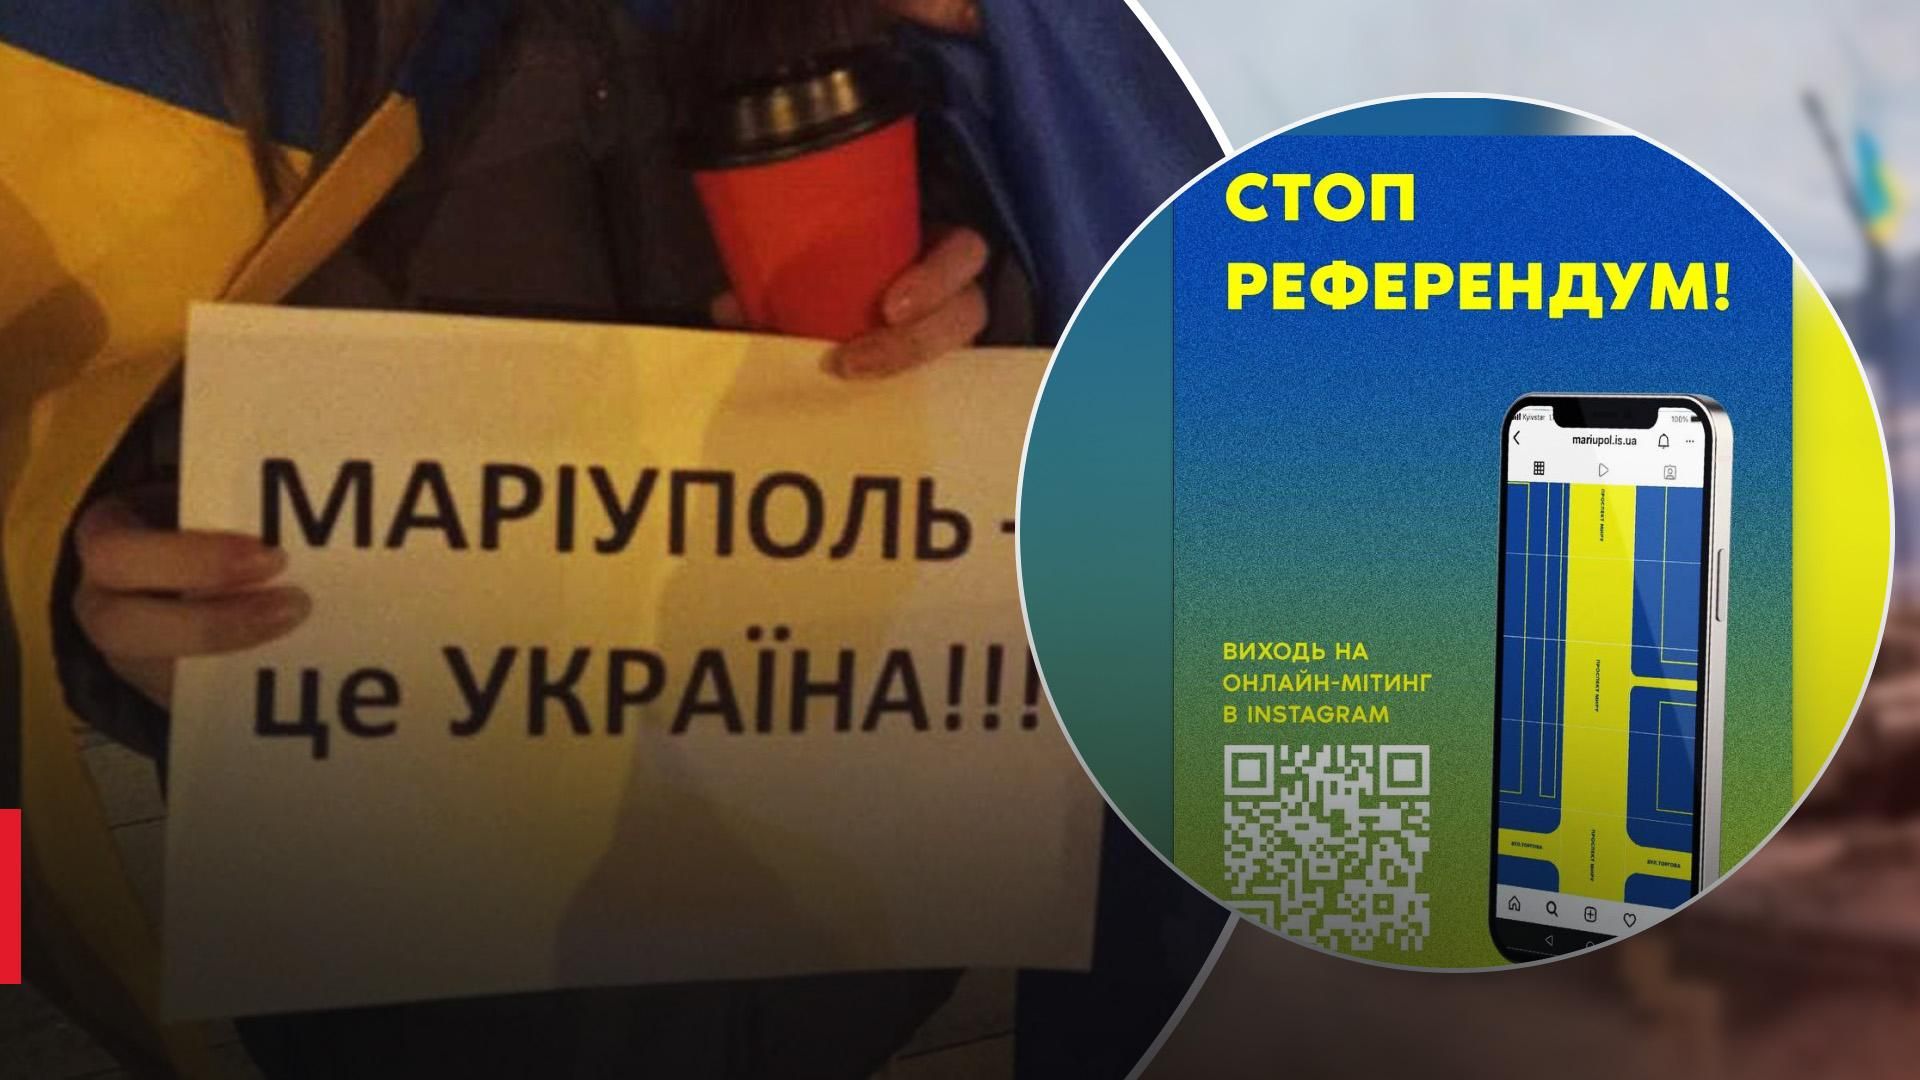 Чтобы остановить рефоэрендум в Украине пройдет онлайн-митинг "Мариуполь – это Украина"